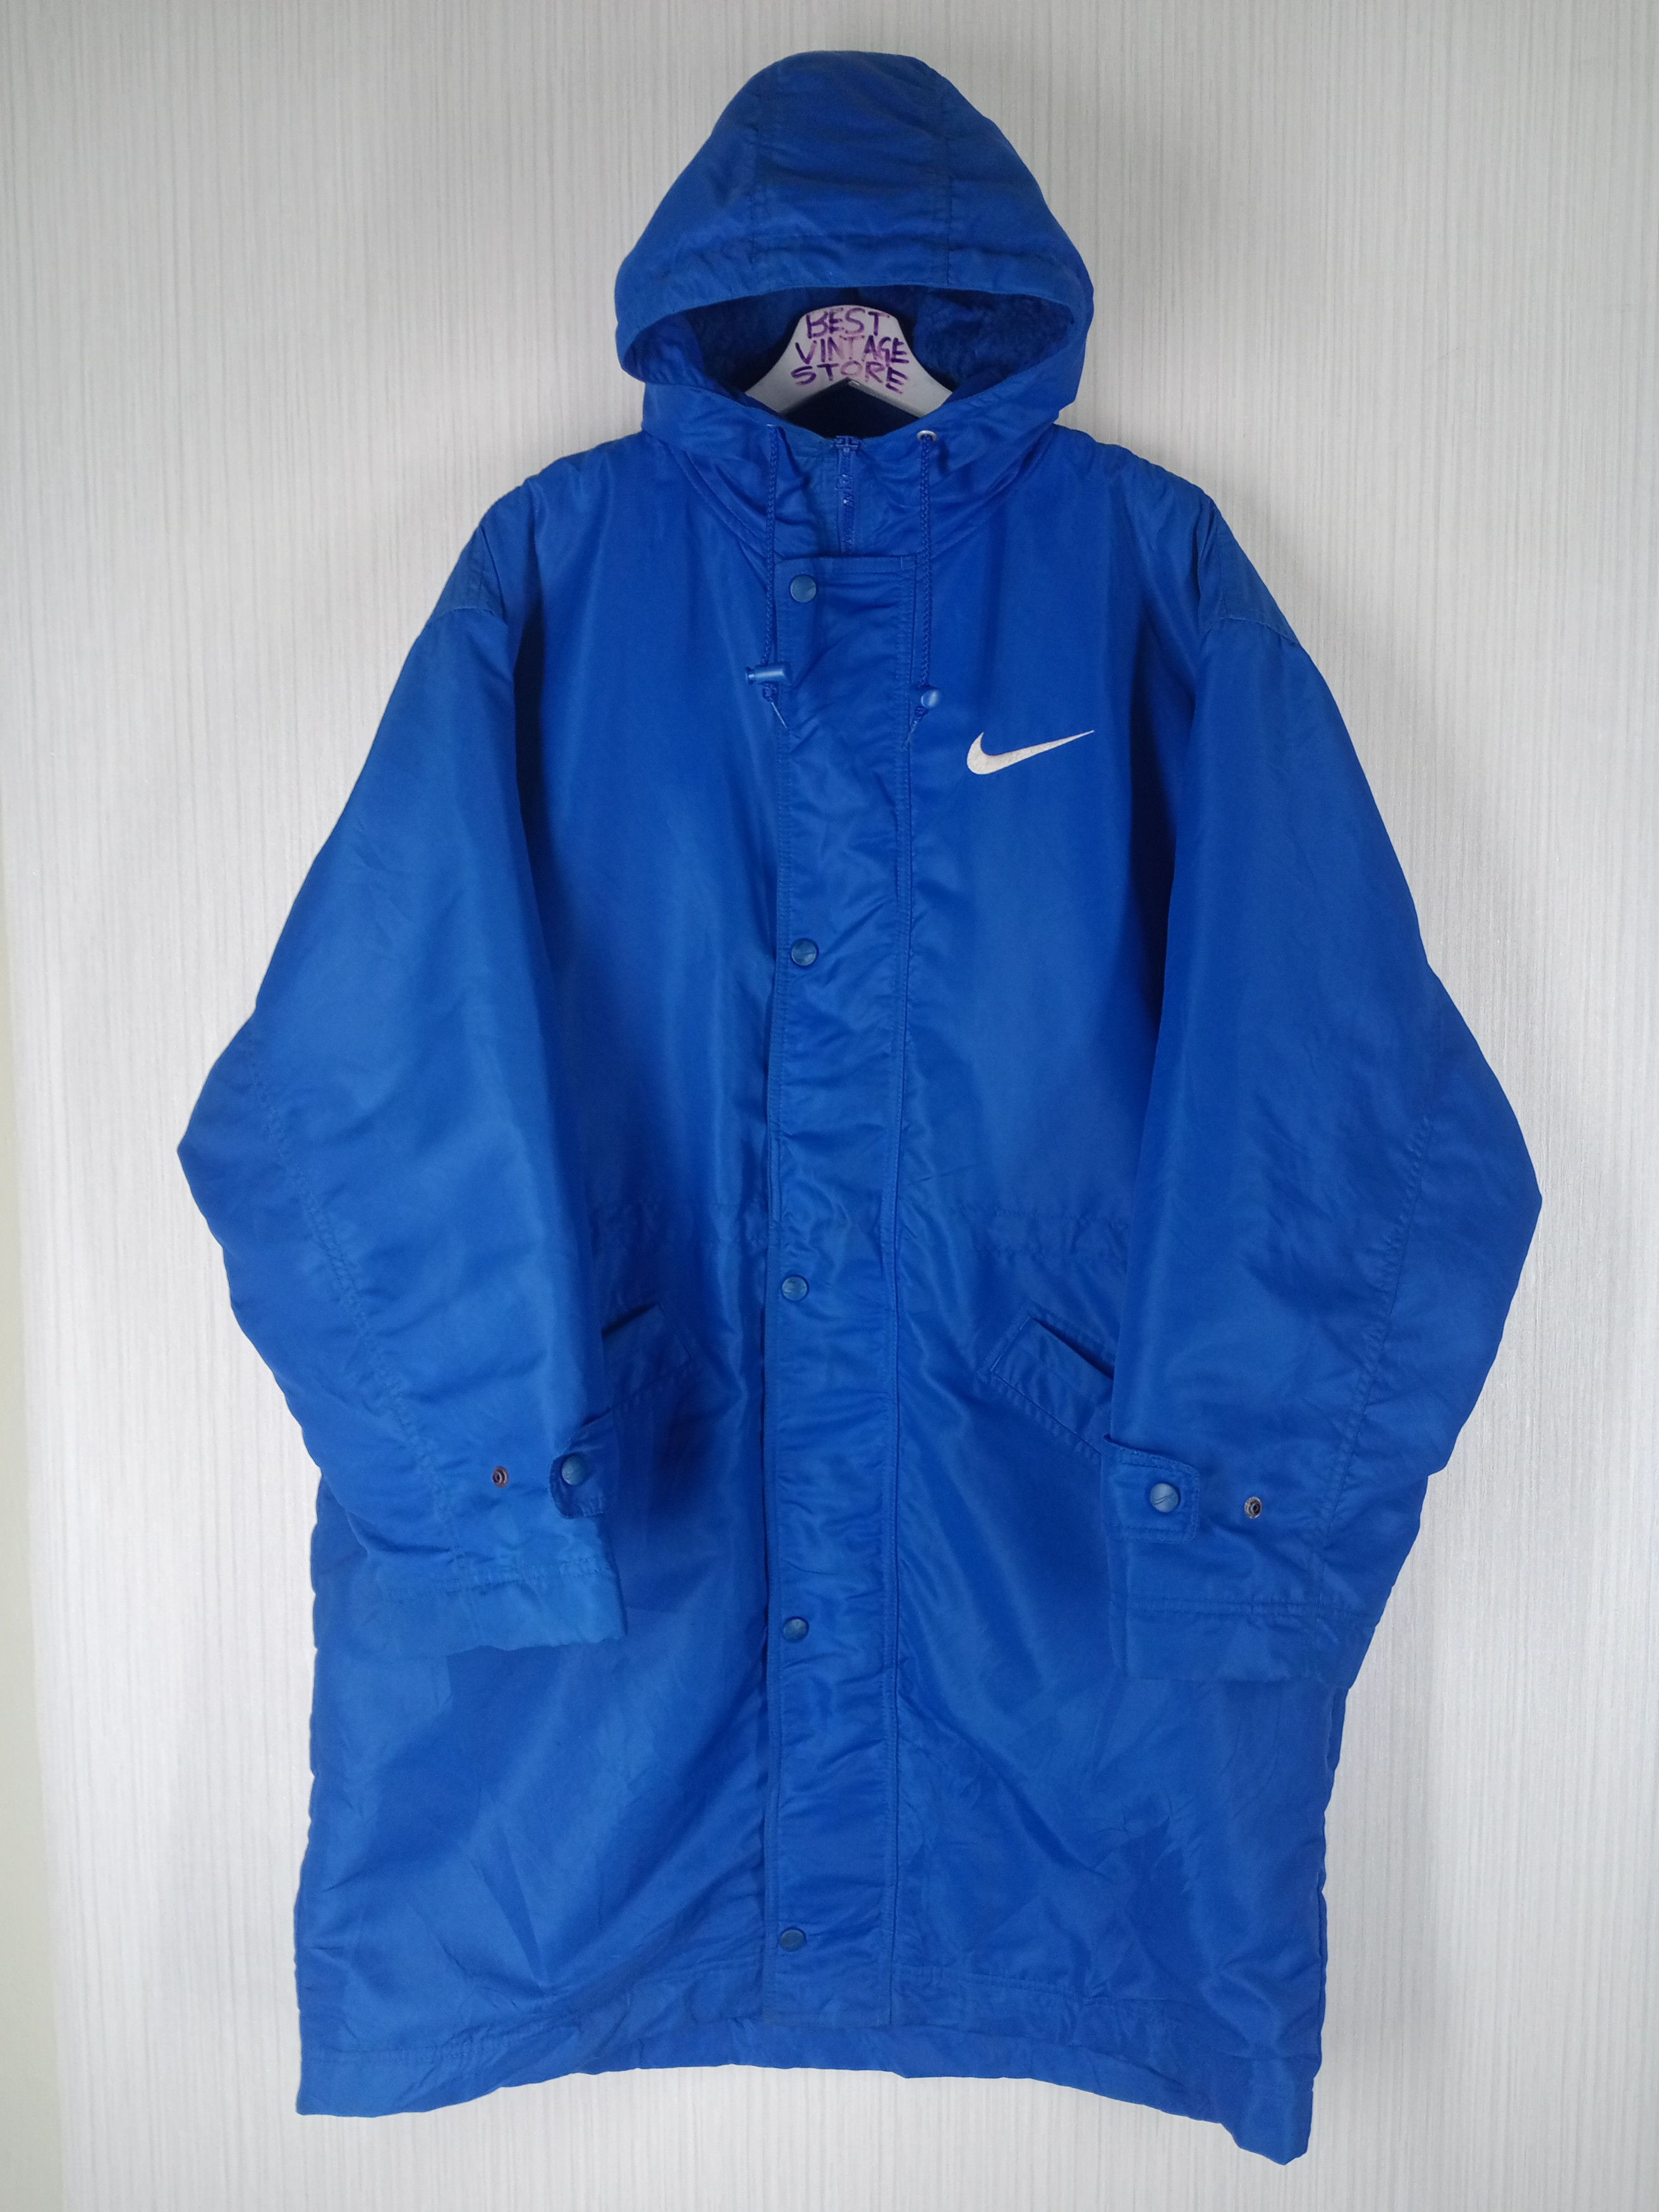 Nike Vintage 90s Nike Big Swoosh Winter Long Jacket Hoodie | Grailed